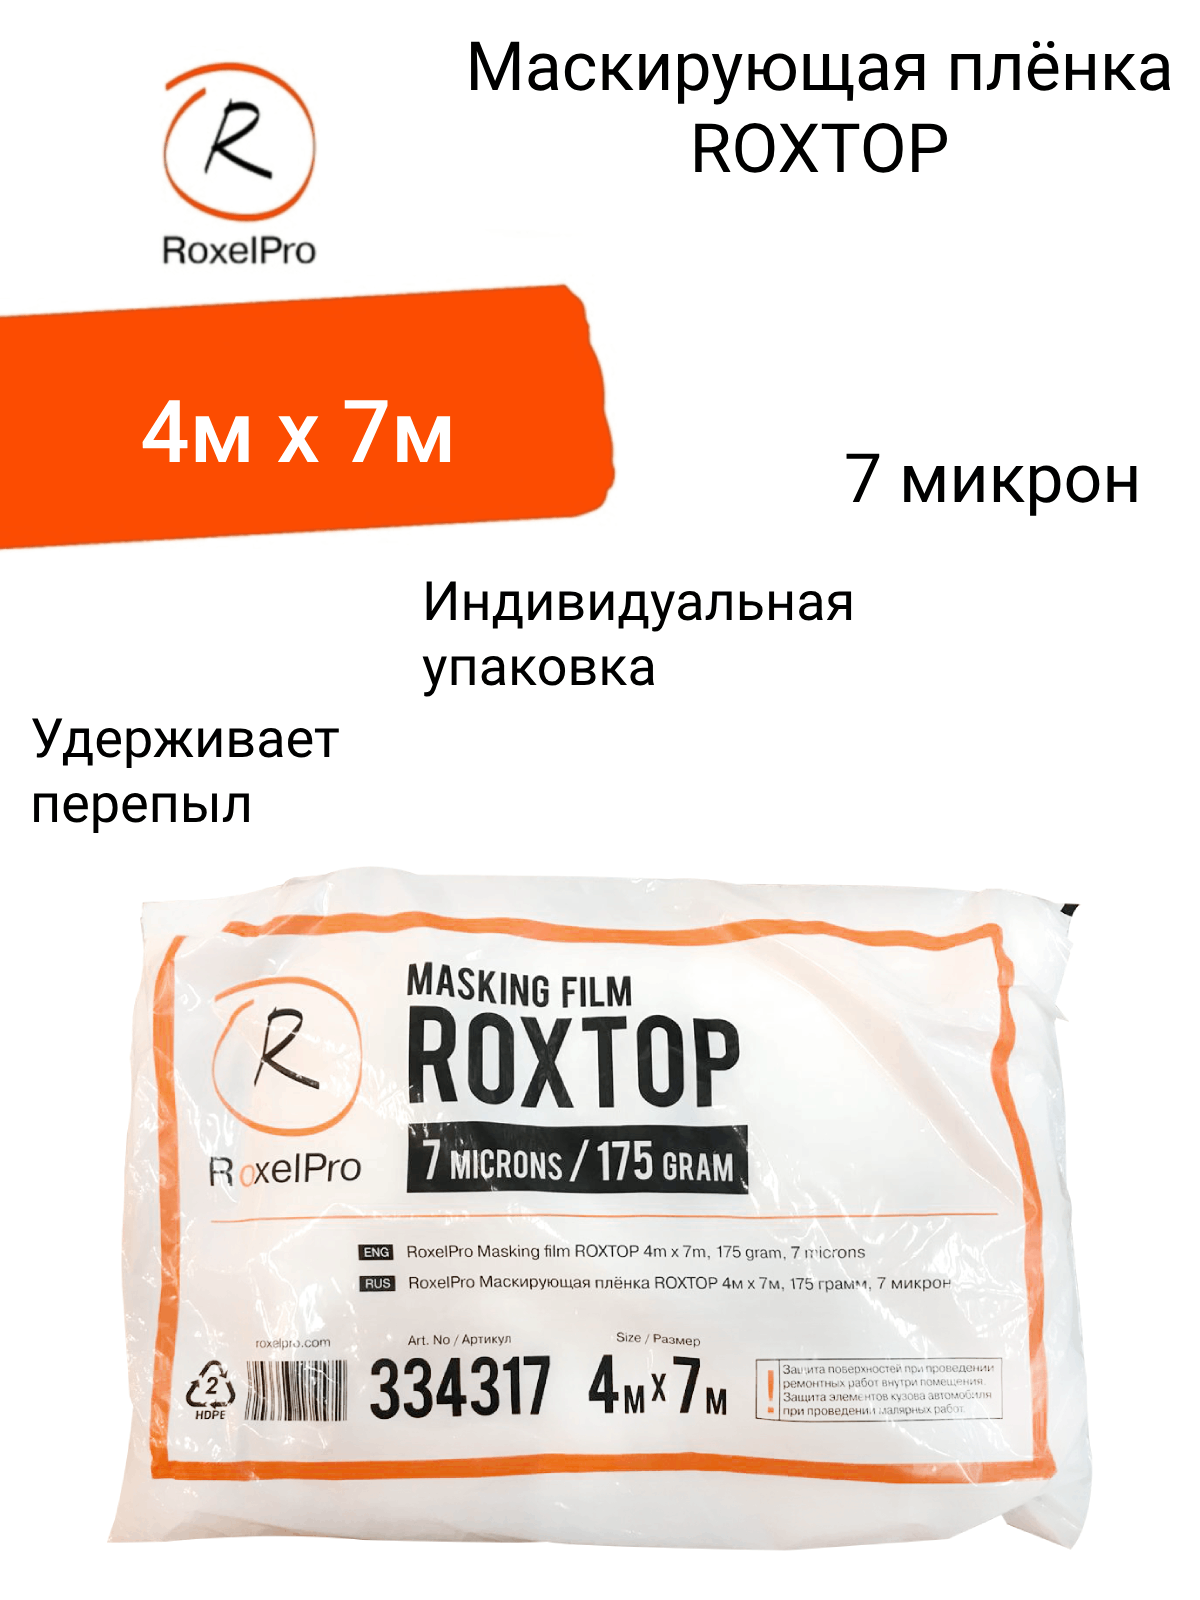 RoxelPro Профессиональная маскирующая плёнка ROXTOP / пленка укрывная для ремонта 4м х 7м, 175г, 7 микрон, 1 шт. в индивидуальной упаковке.